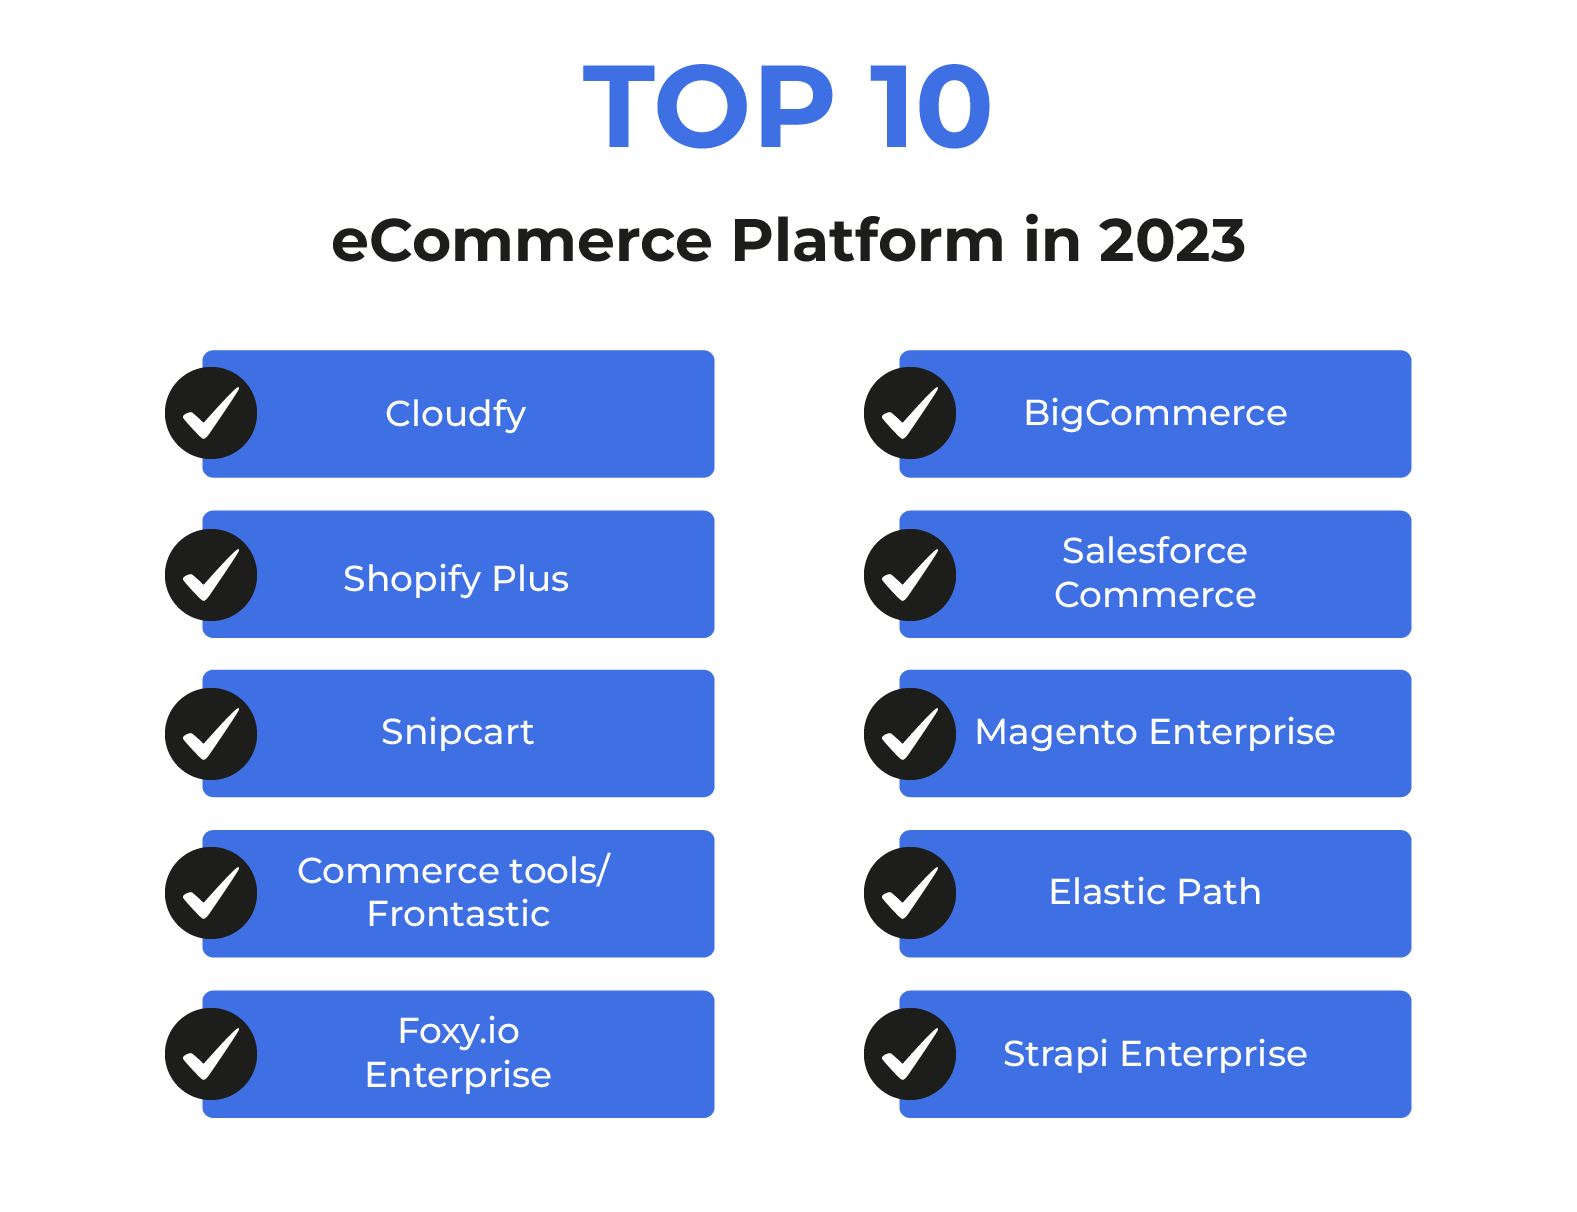 Top 10 eCommerce Platform in 2023